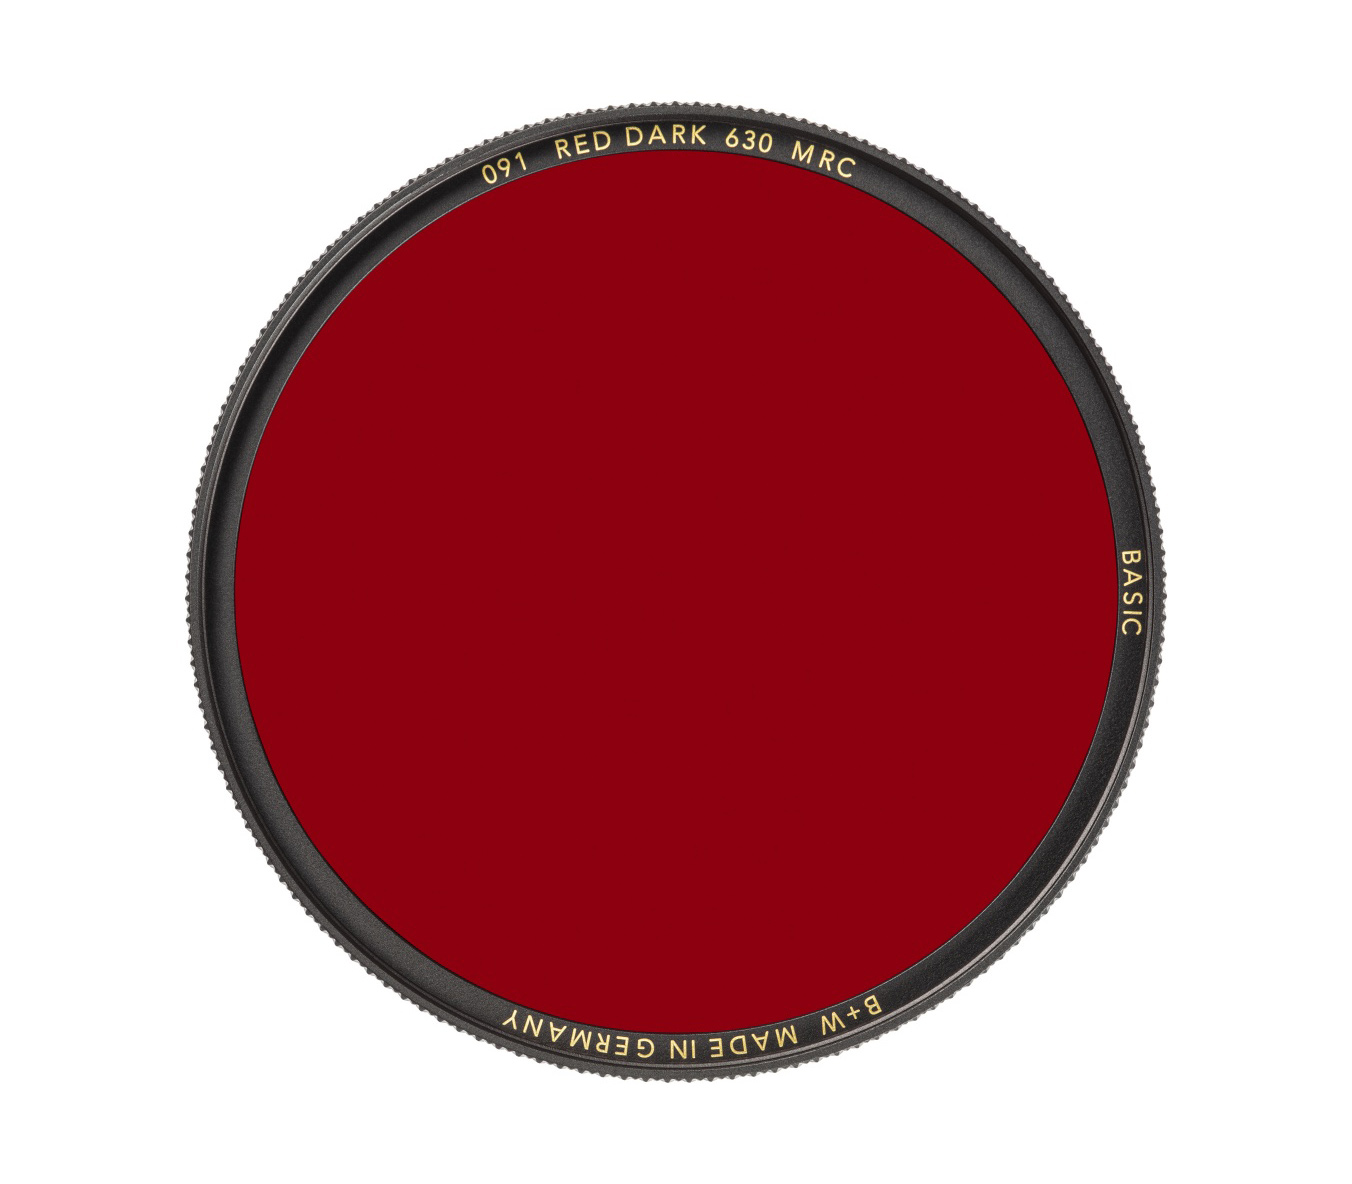 BASIC 091 Red dark MRC 630 77mm